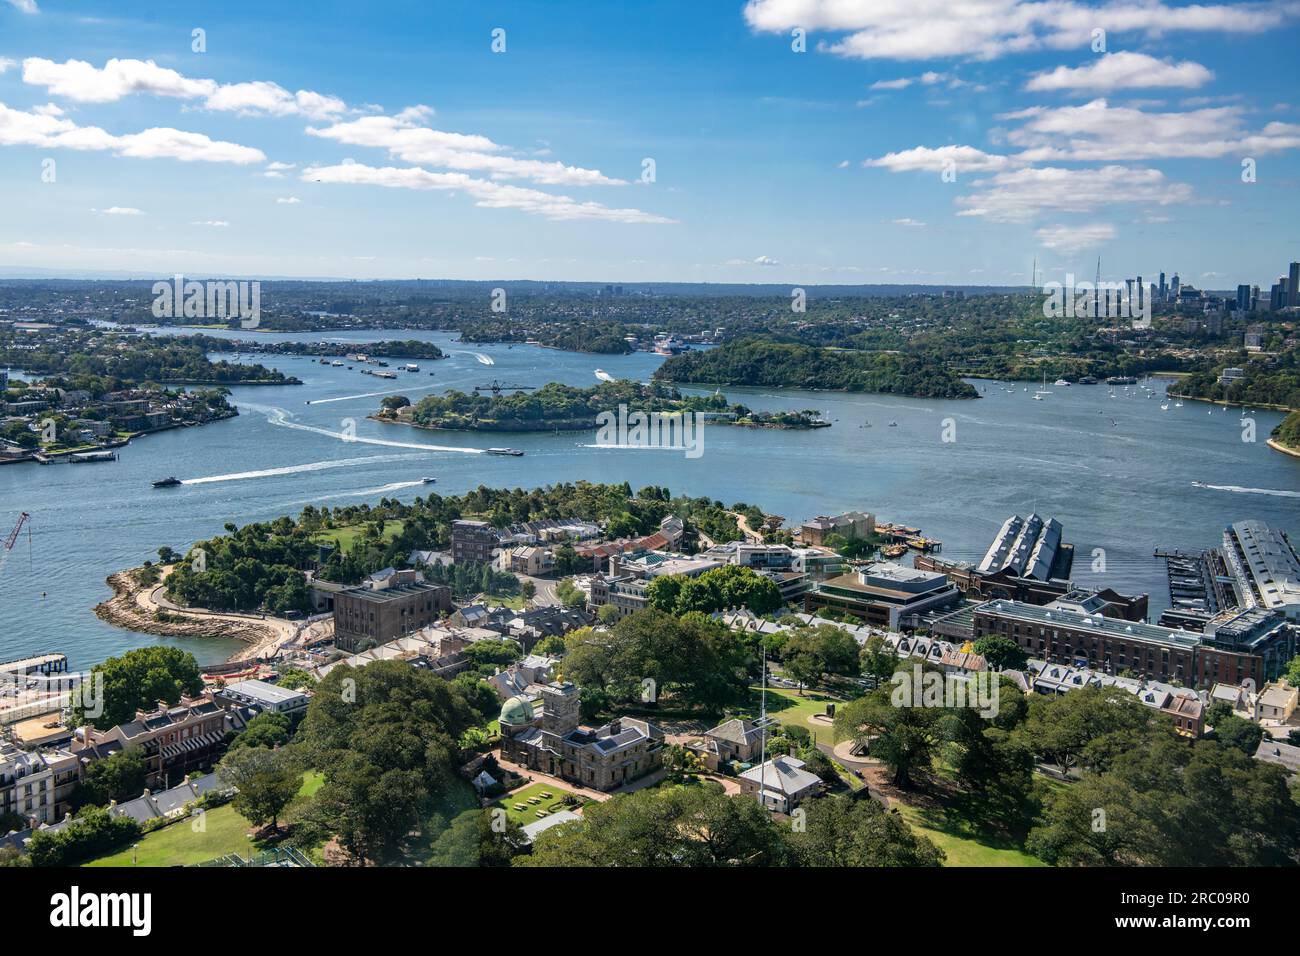 Vista aérea del puerto de Sydney mirando hacia el noroeste con Garden Island y el histórico distrito de Rocks en primer plano Foto de stock